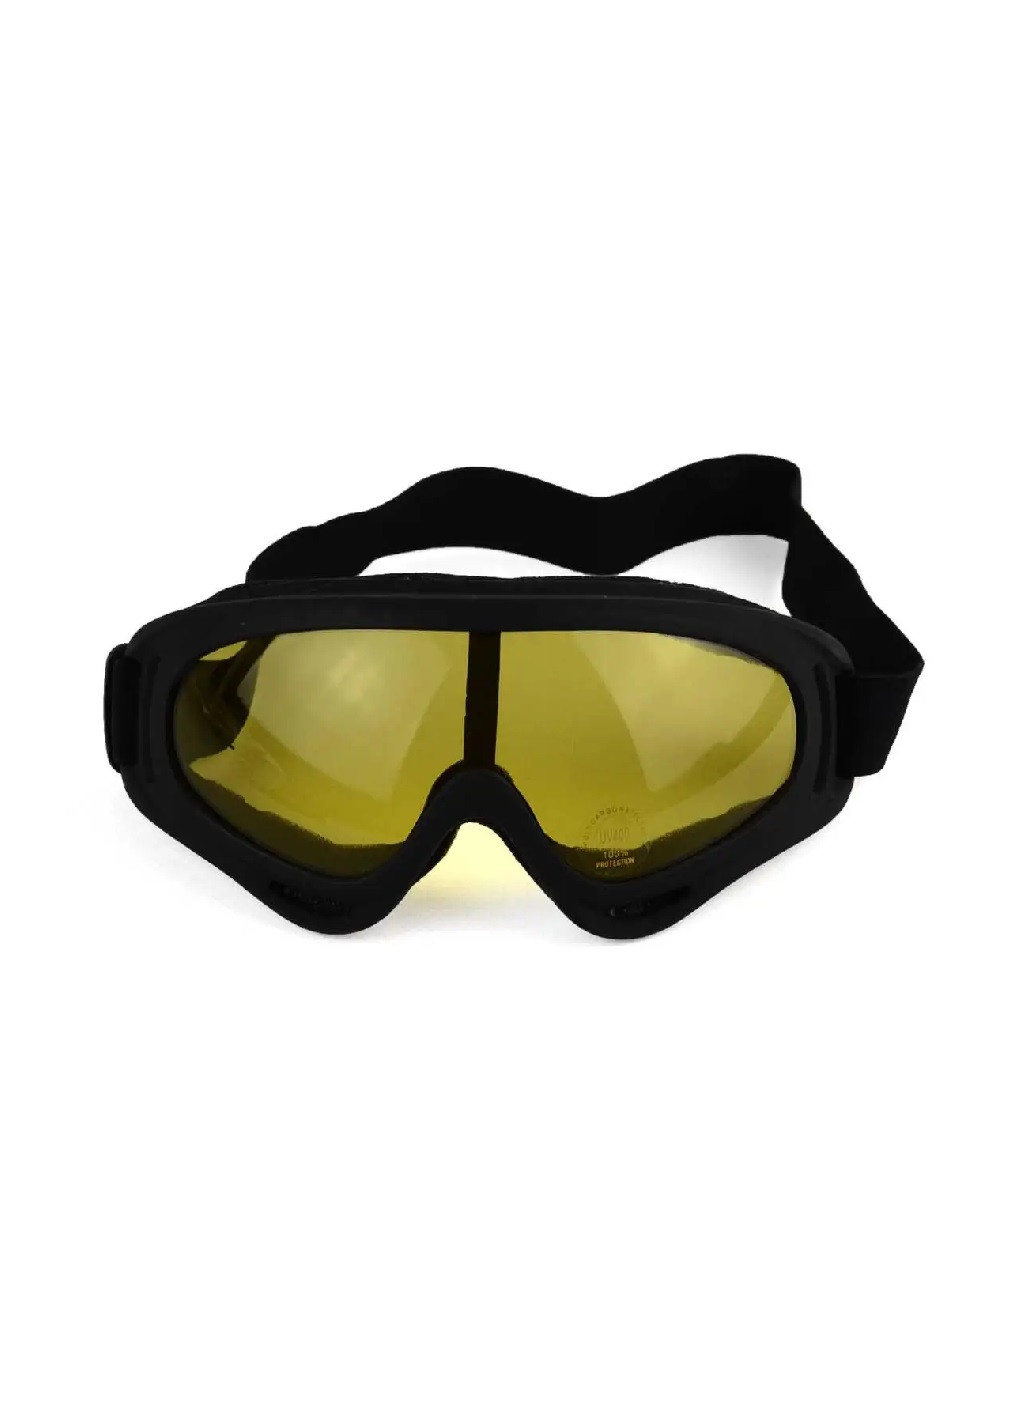 Маска очки защитные для пейнтбола страйкбола сноуборда лыж велосипеда самоката черный корпус (476217-Prob) Желтые линзы Unbranded (277696172)